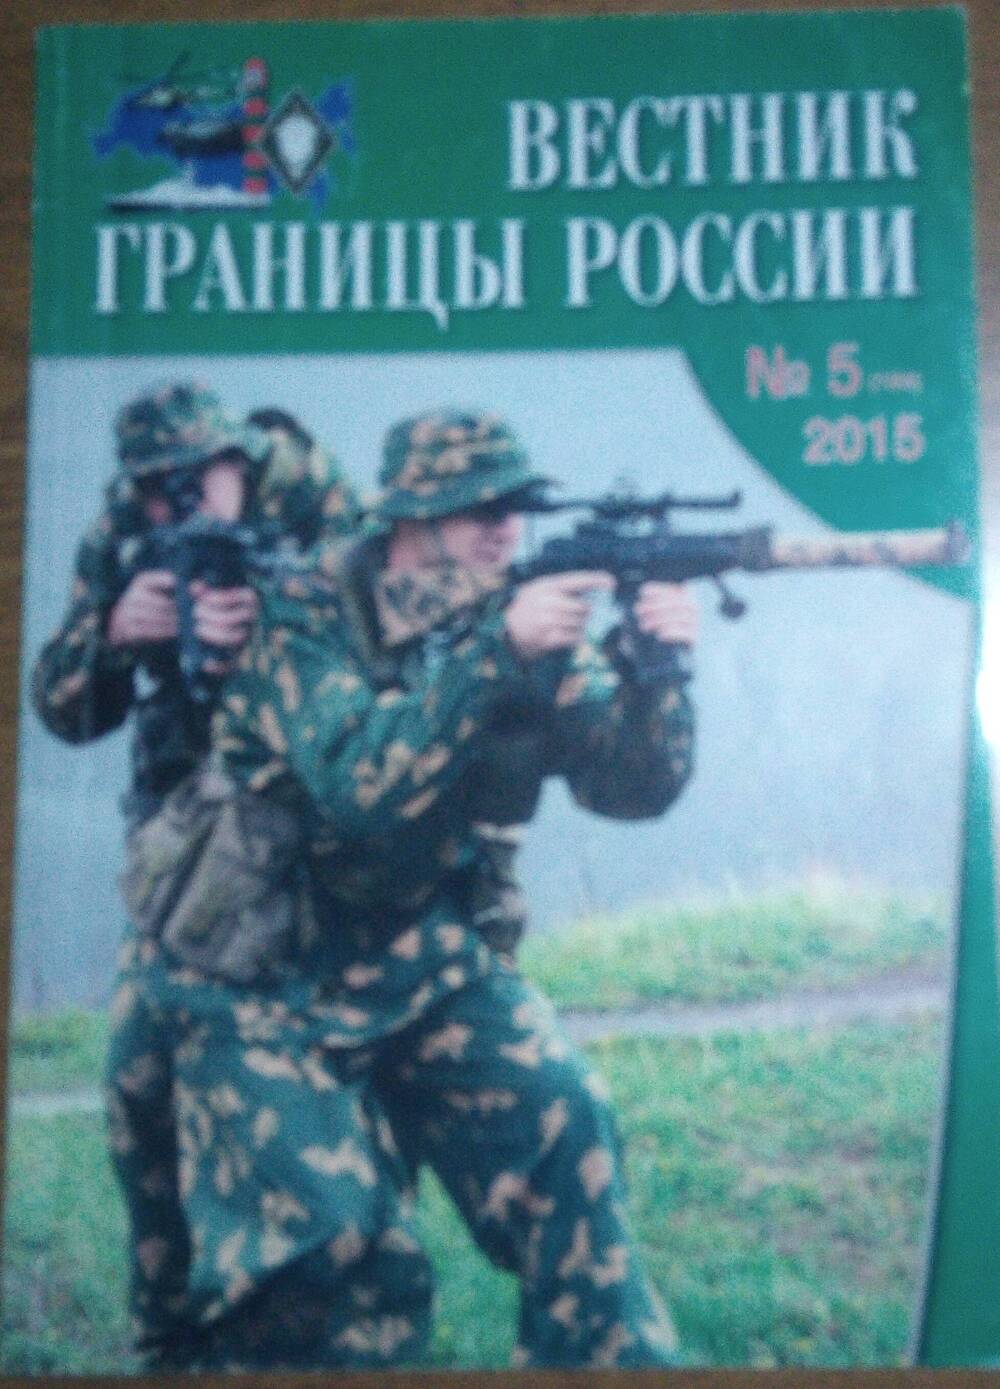 Журнал Вестник границы России. №5, 2015 г.